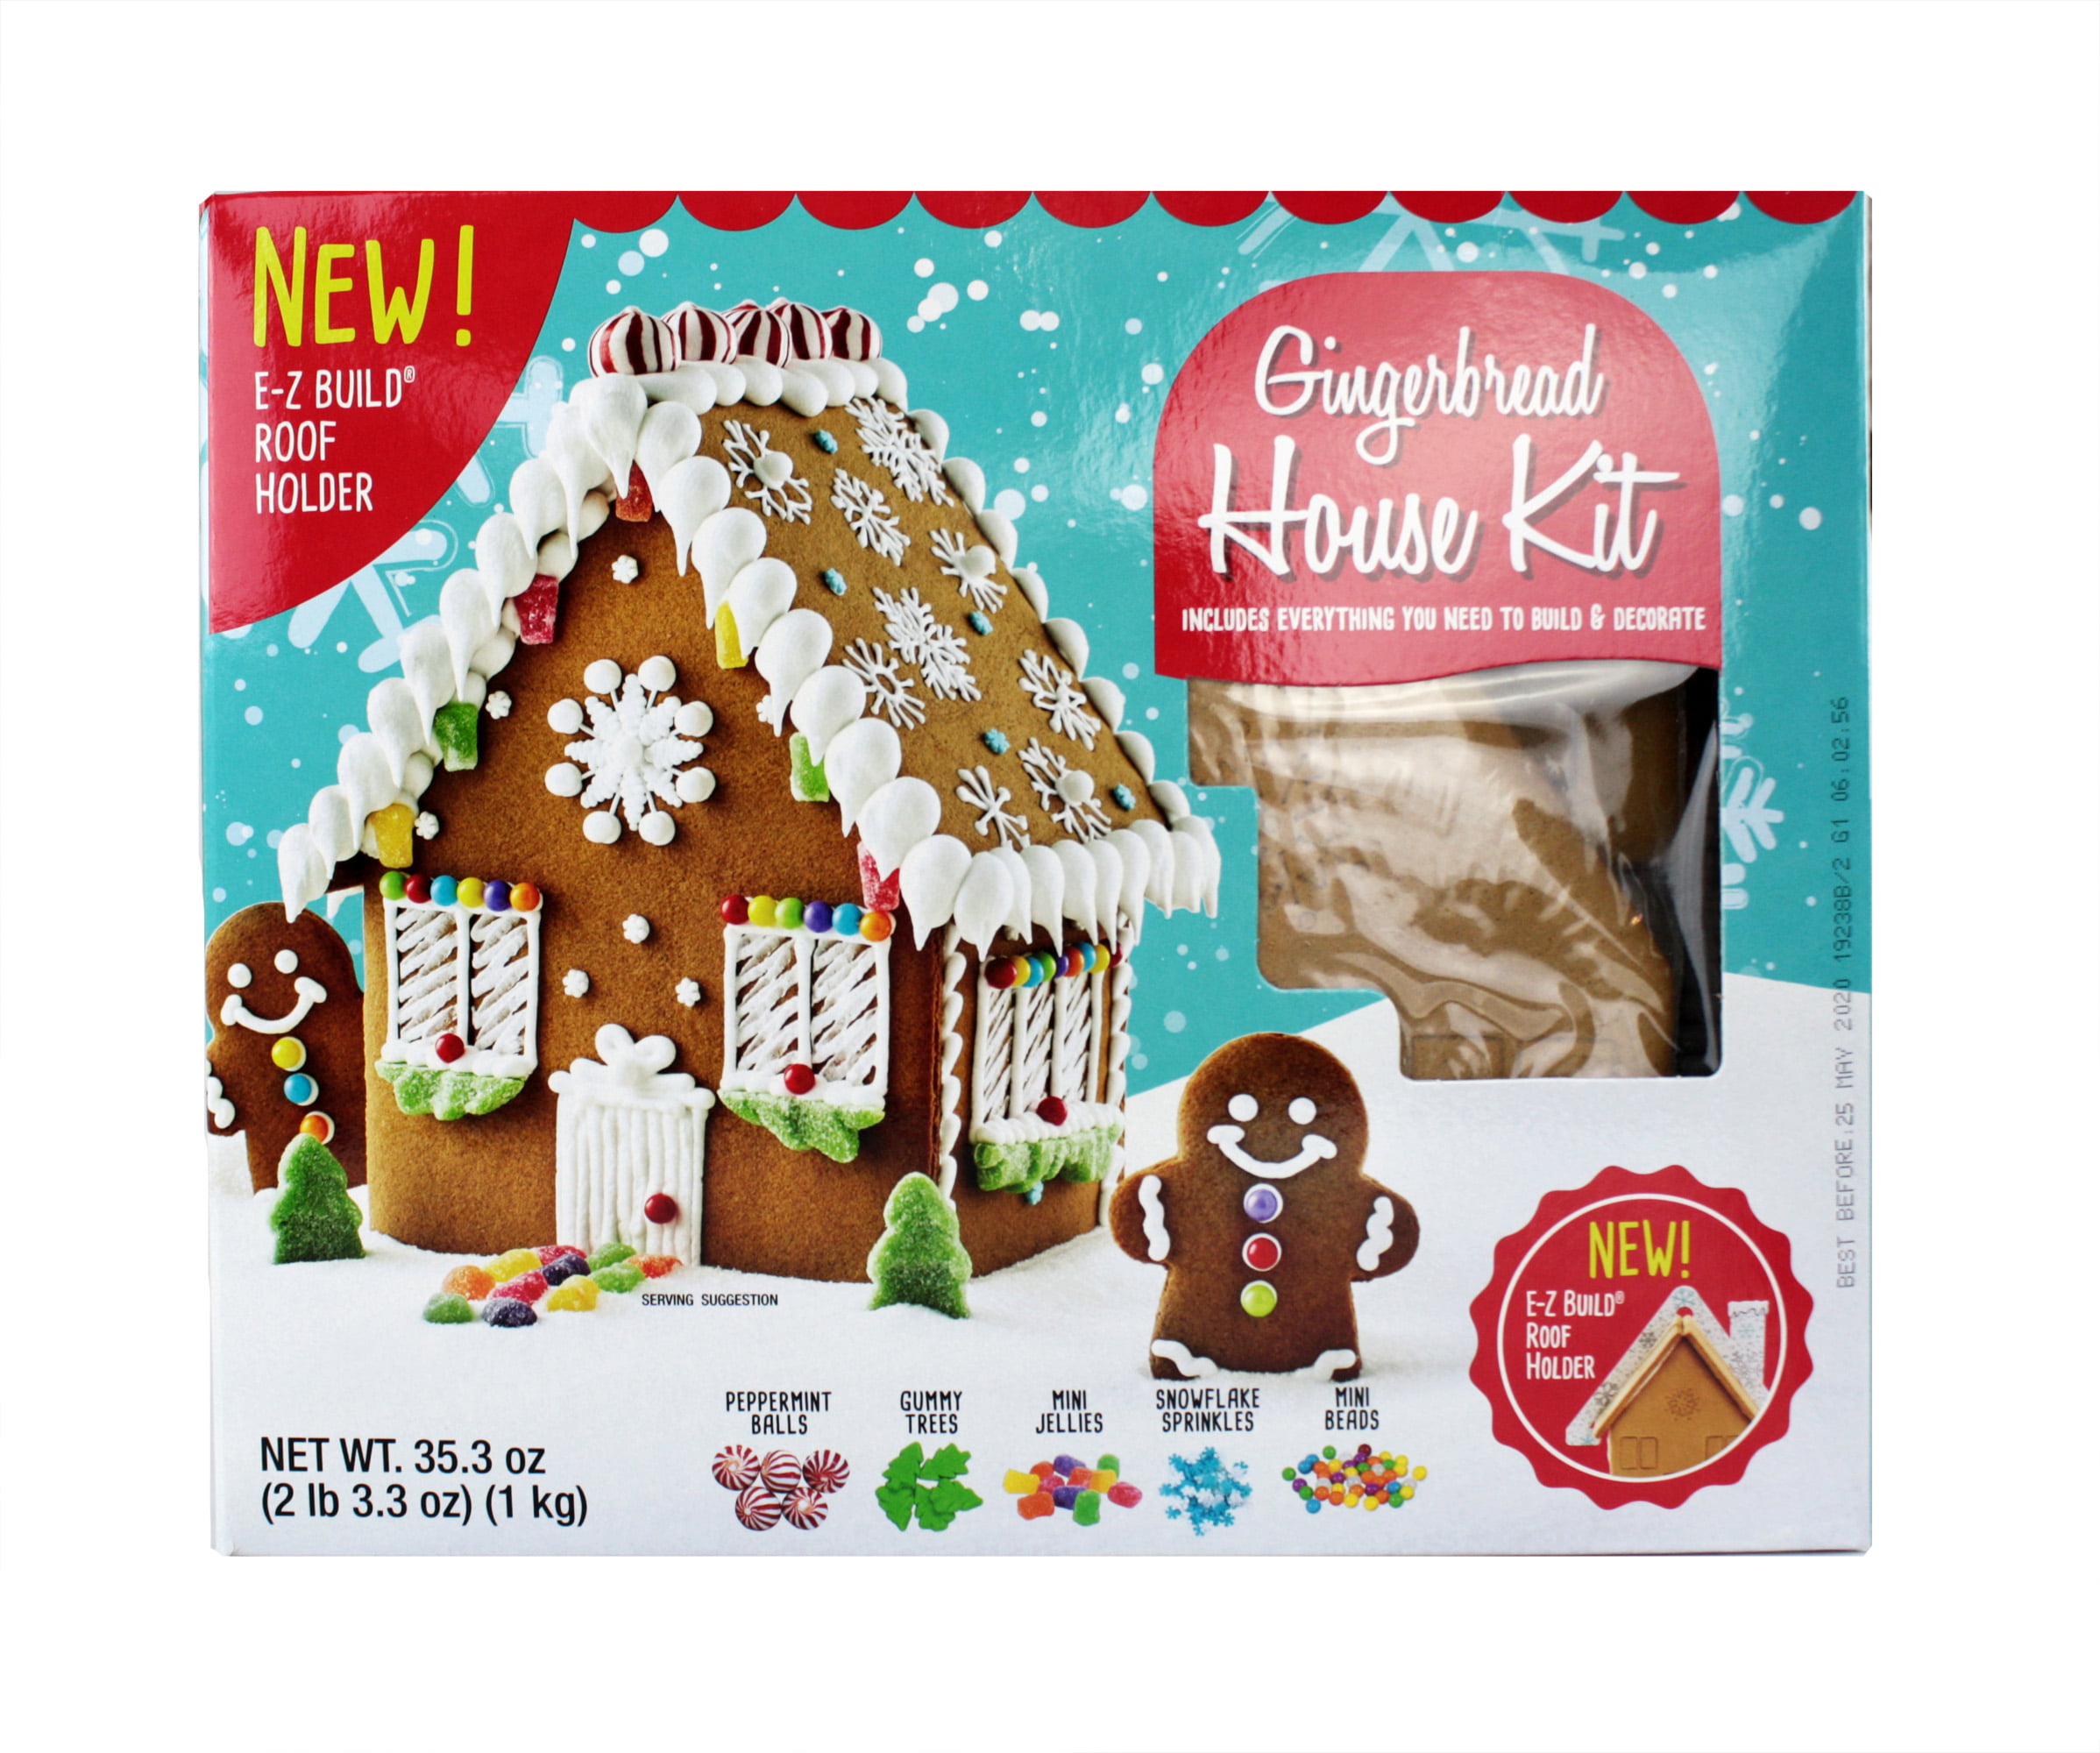 gingerbread house kit kmart